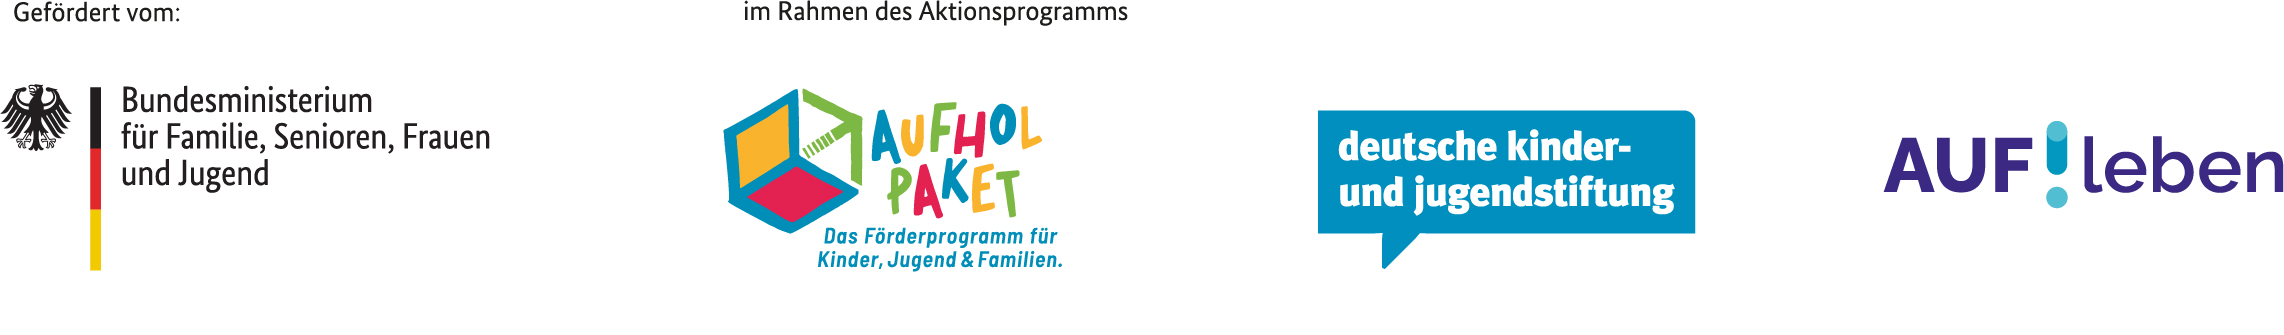 Logos der Förderer des Programms AUF!leben - Zukunft ist jetzt.